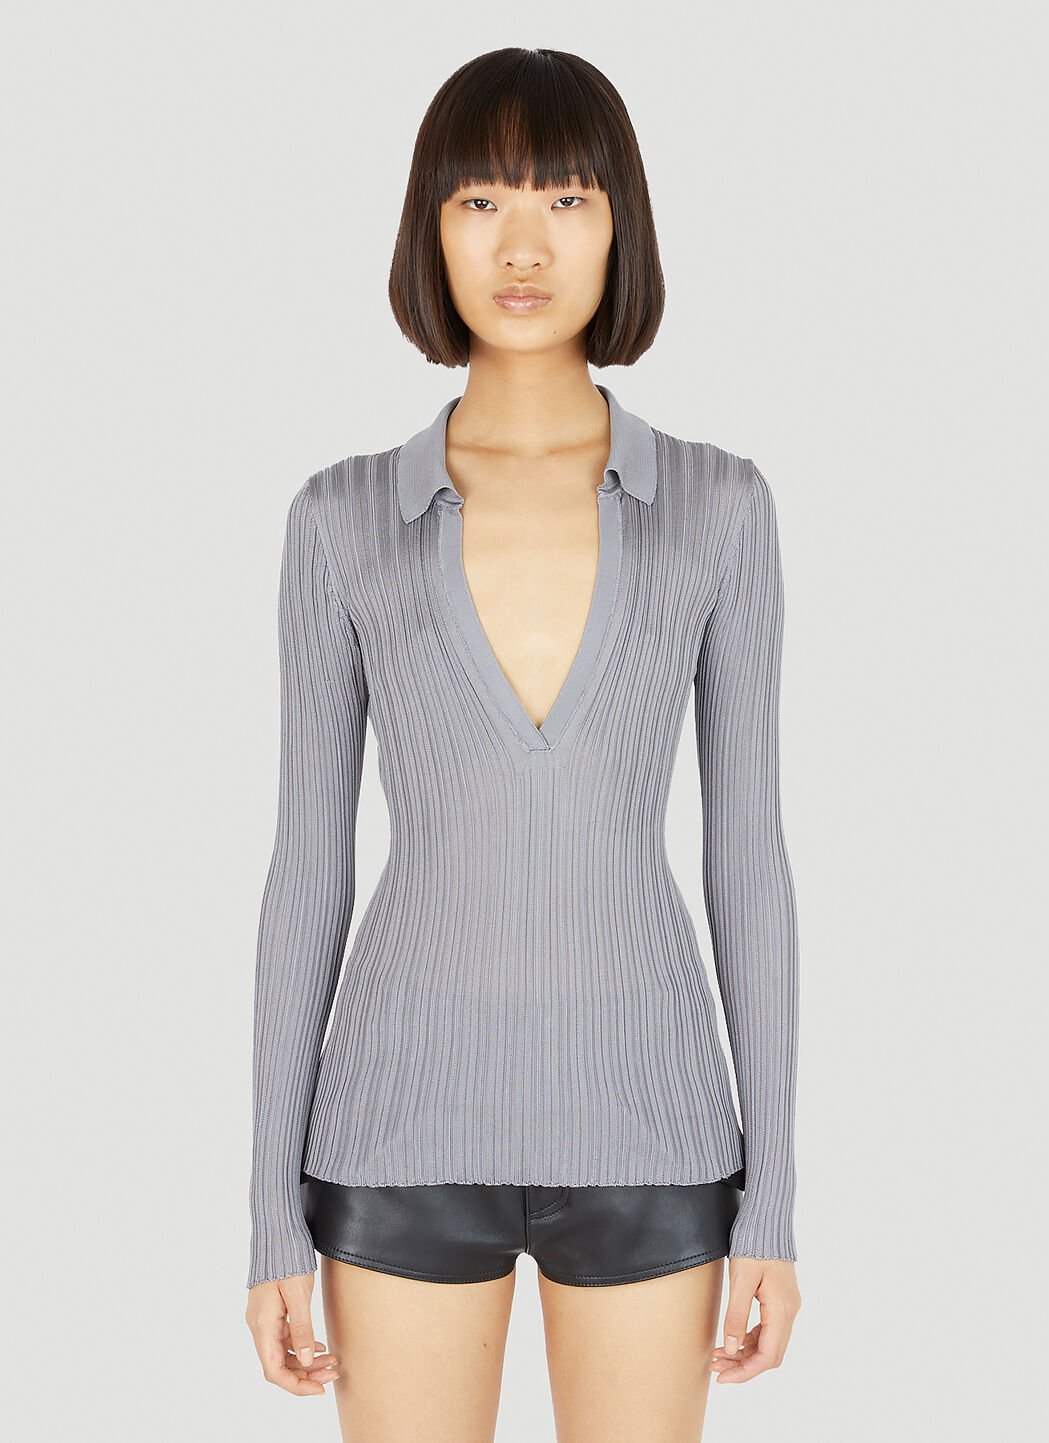 Durazzi Milano Silk Knit Polo Top Grey drz0254004